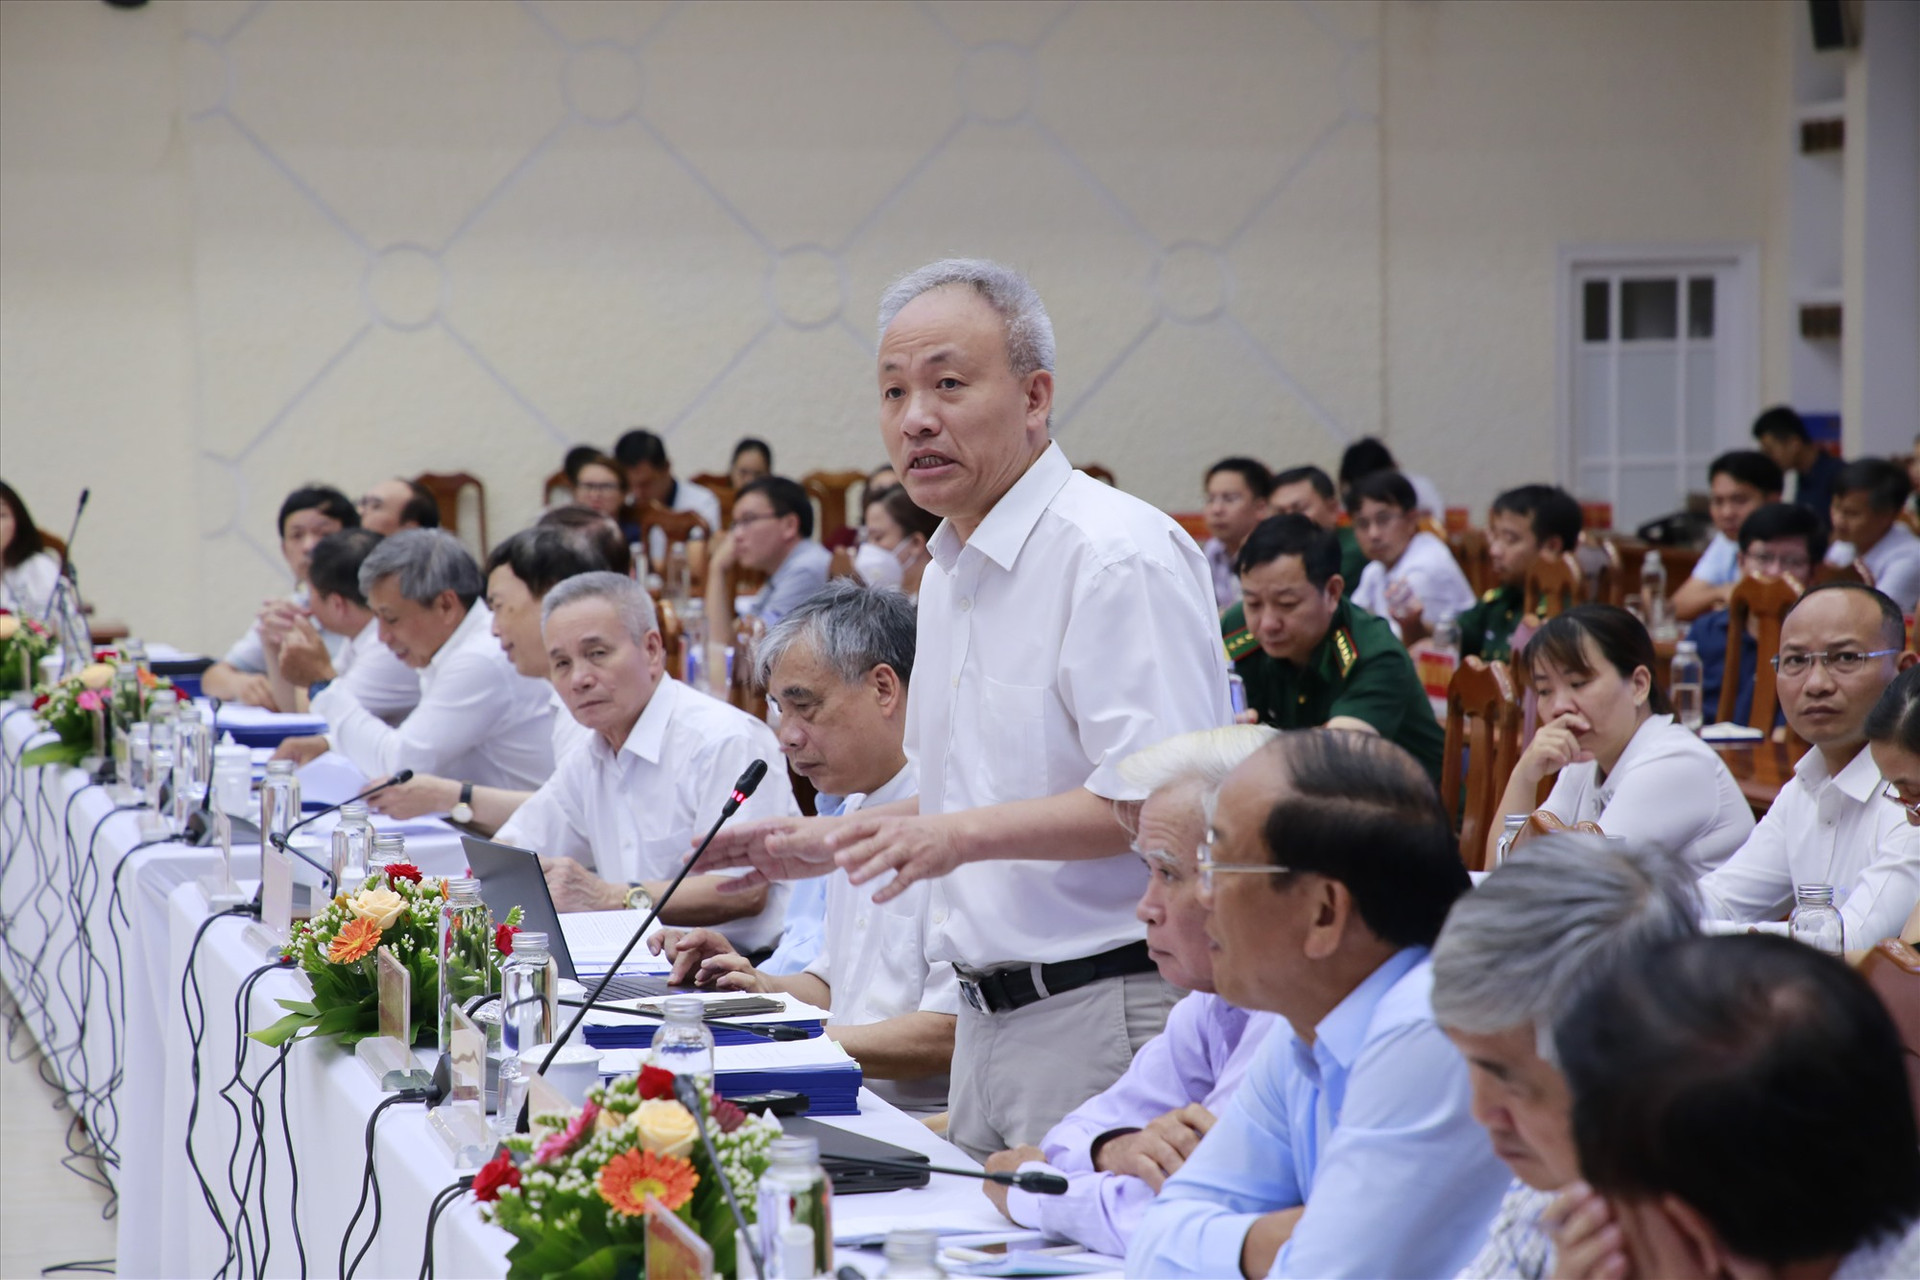 Giáo sư Nguyễn Quốc Sỹ phát biểu tại phiên thảo luận chuyên đề về phát triển công nghiệp trong hội nghị góp ý báo cáo giữa kỳ quy hoạch tỉnh chiều nay, 3.6. Ảnh: T.C